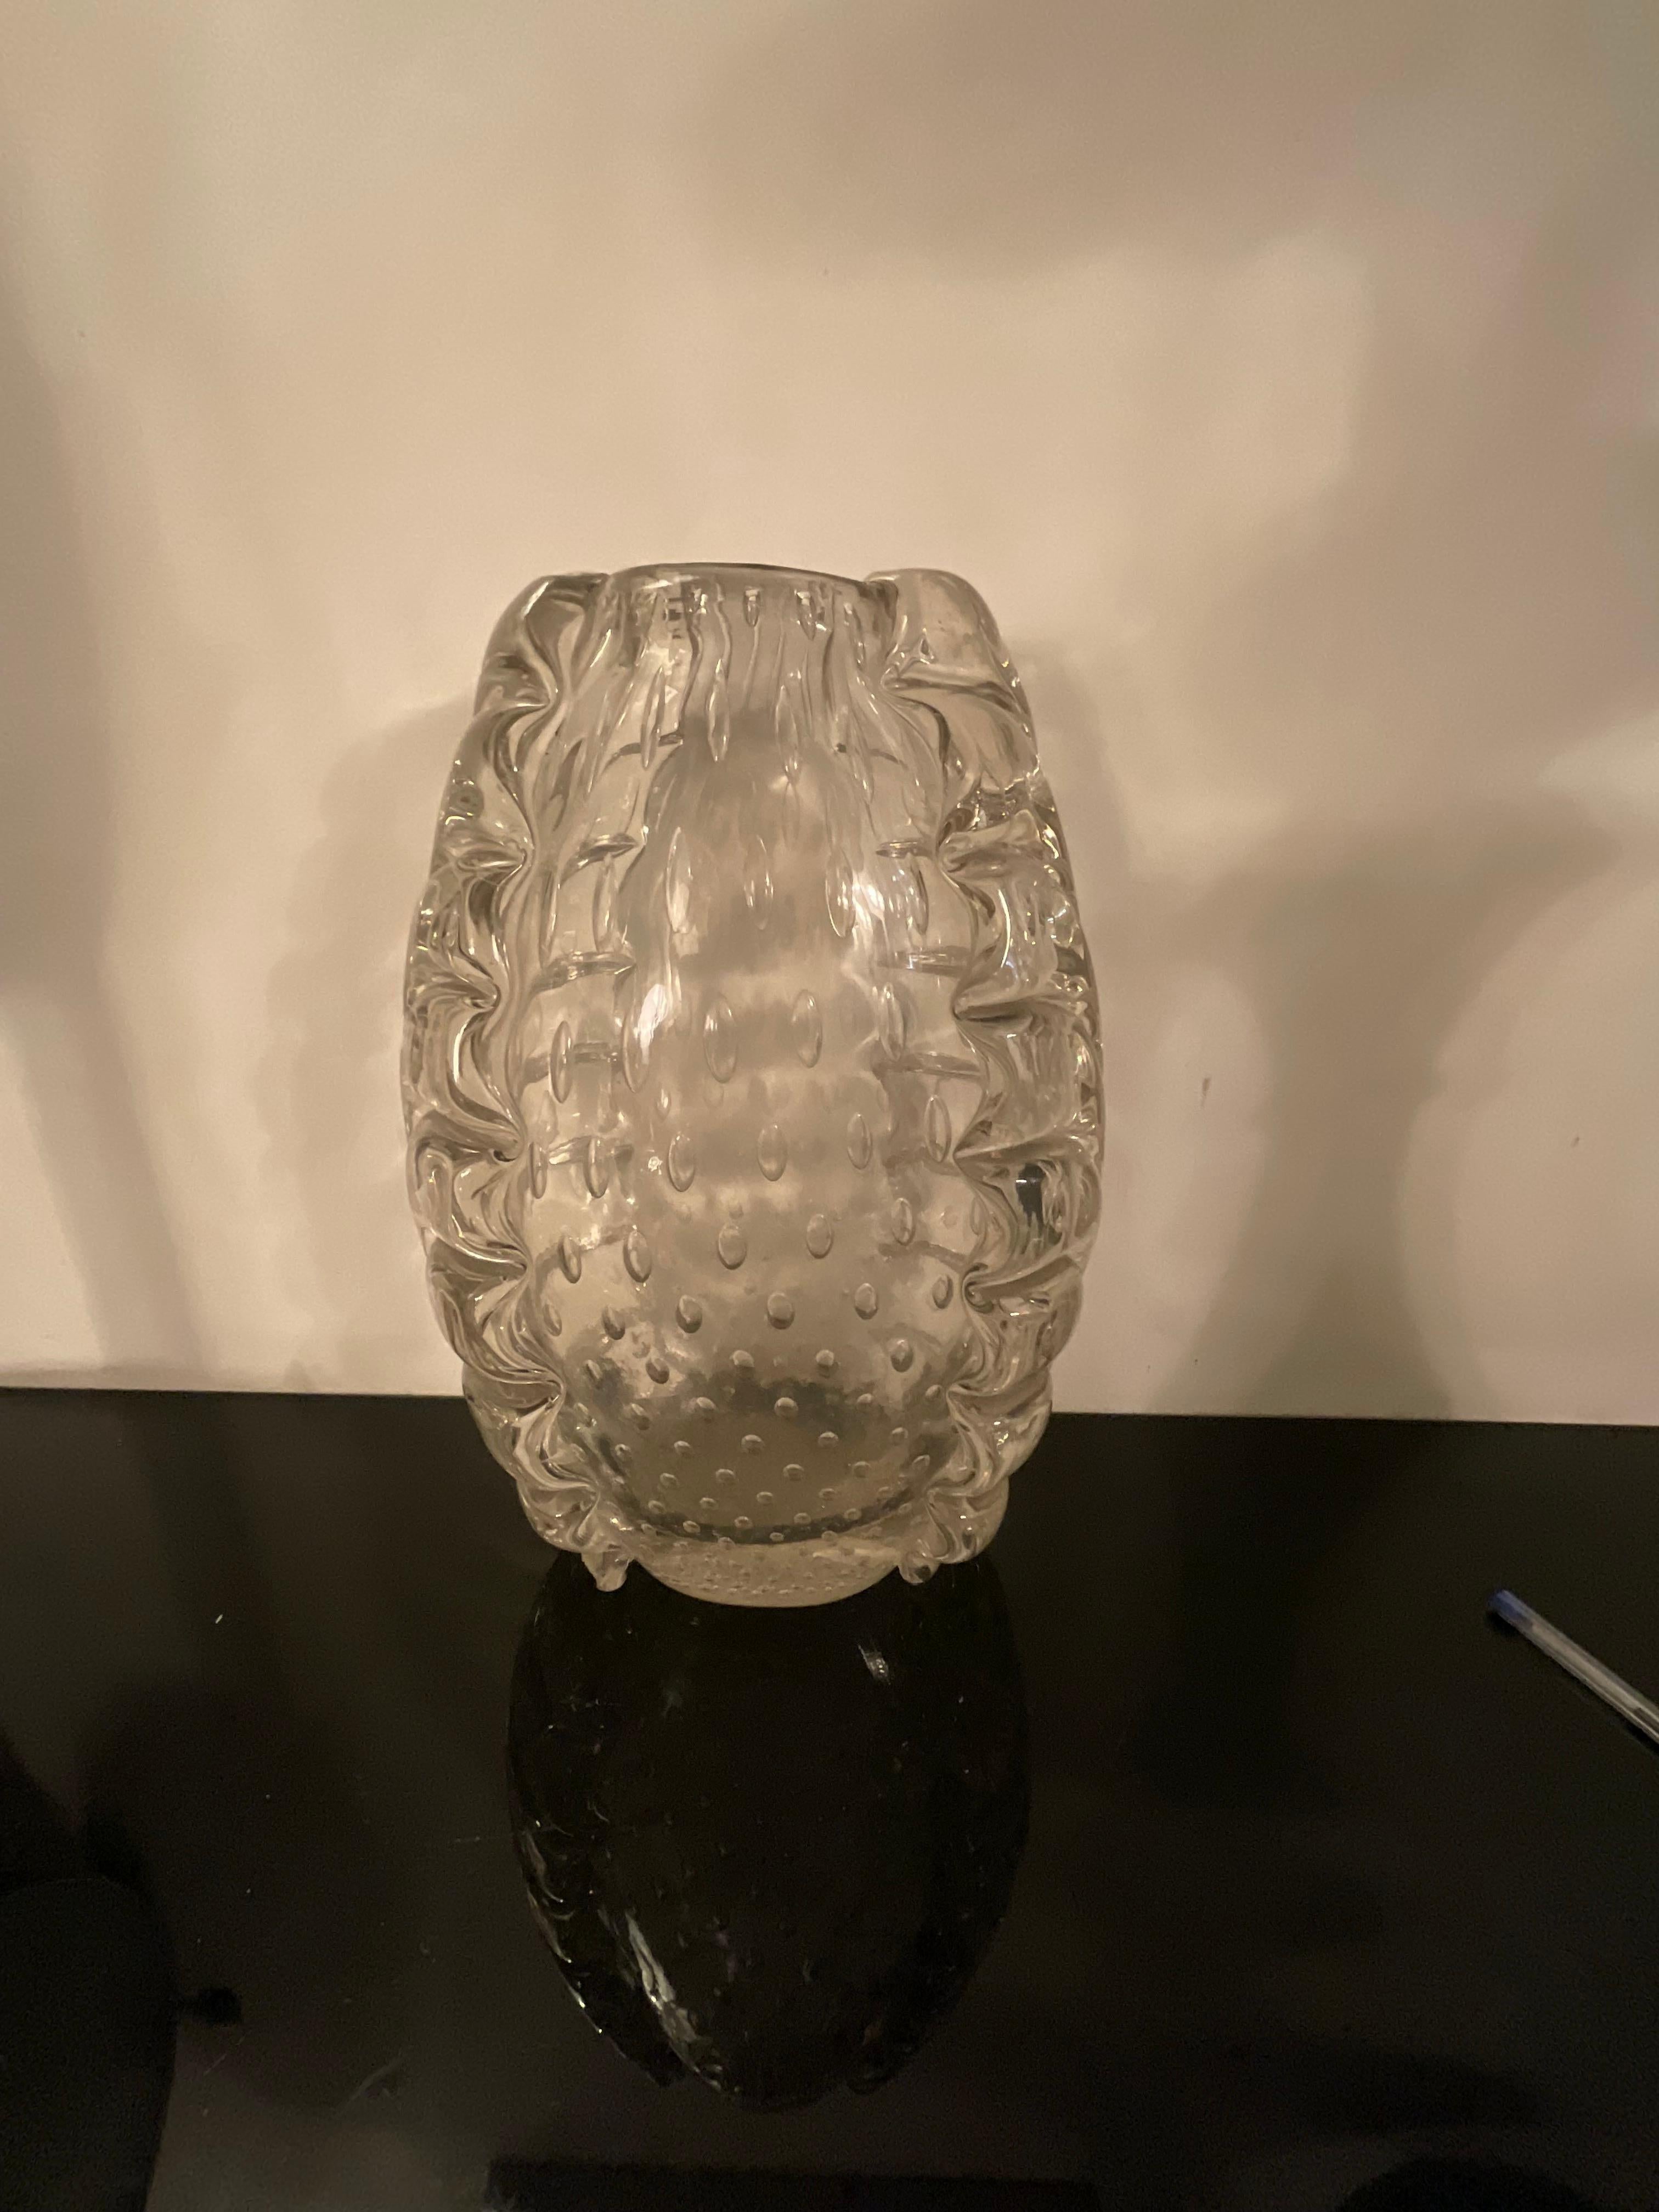 Barovier & Toso, importante vaso in vetro pesante di murano leggermente iridato e con inclusioni di bolle d’aria e grosse costolature laterali a forma di foglie stilizzate .
Originale degli anni 40.
Perfetto stato.